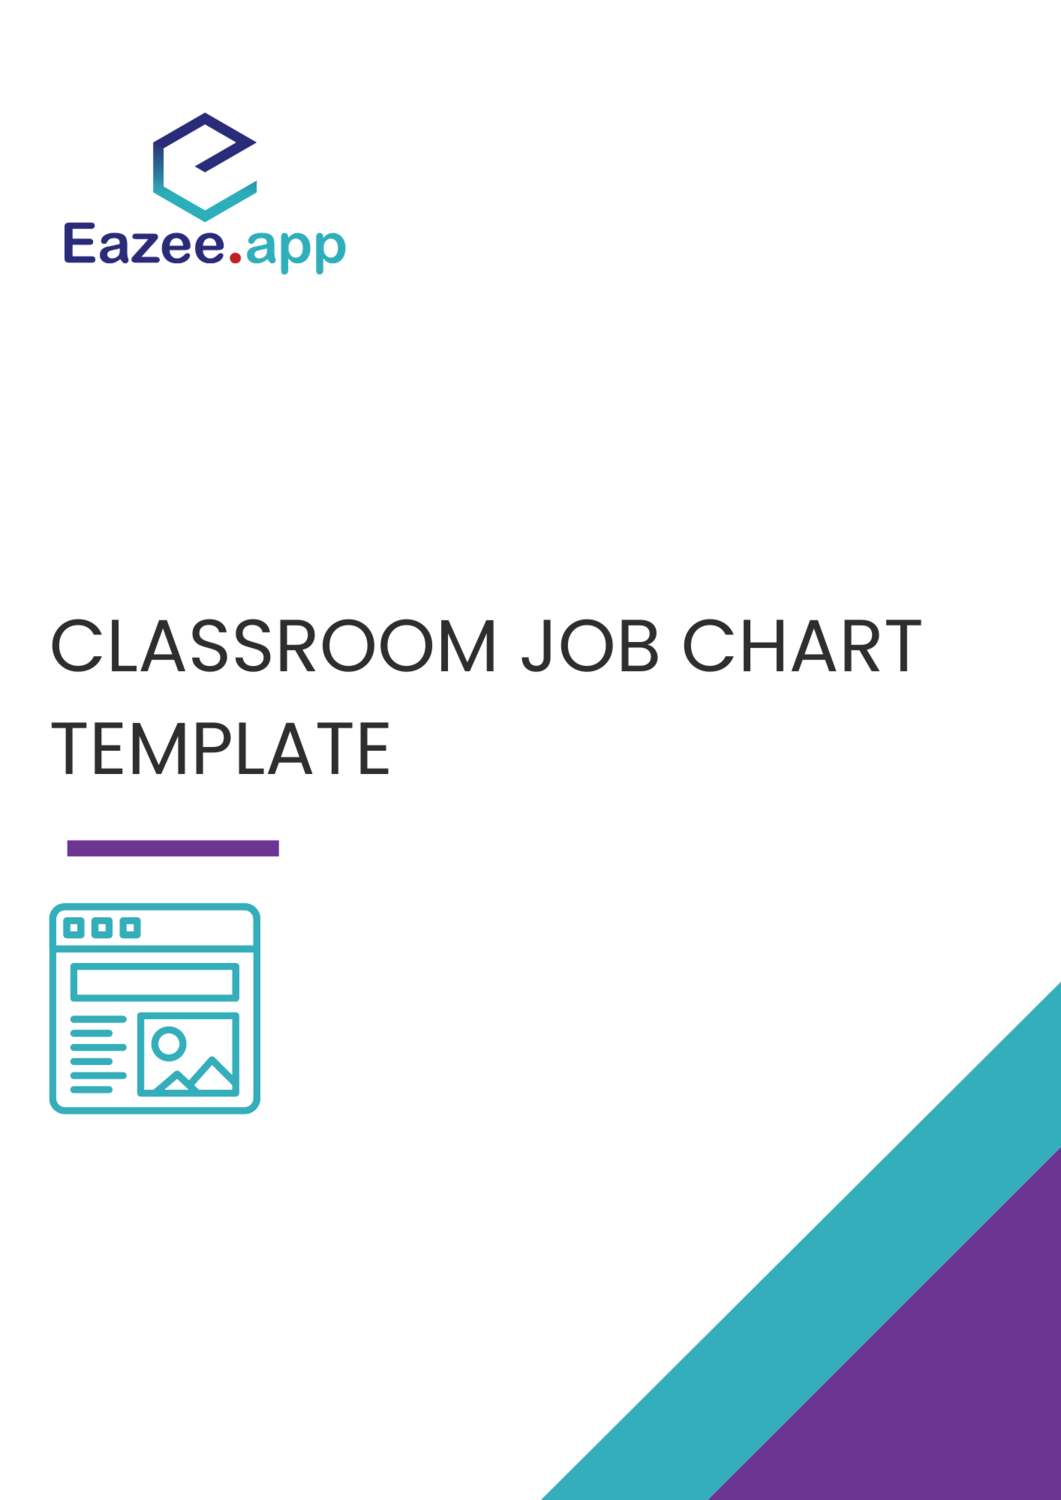 caboose-clipart-classroom-job-chart-caboose-classroom-job-chart